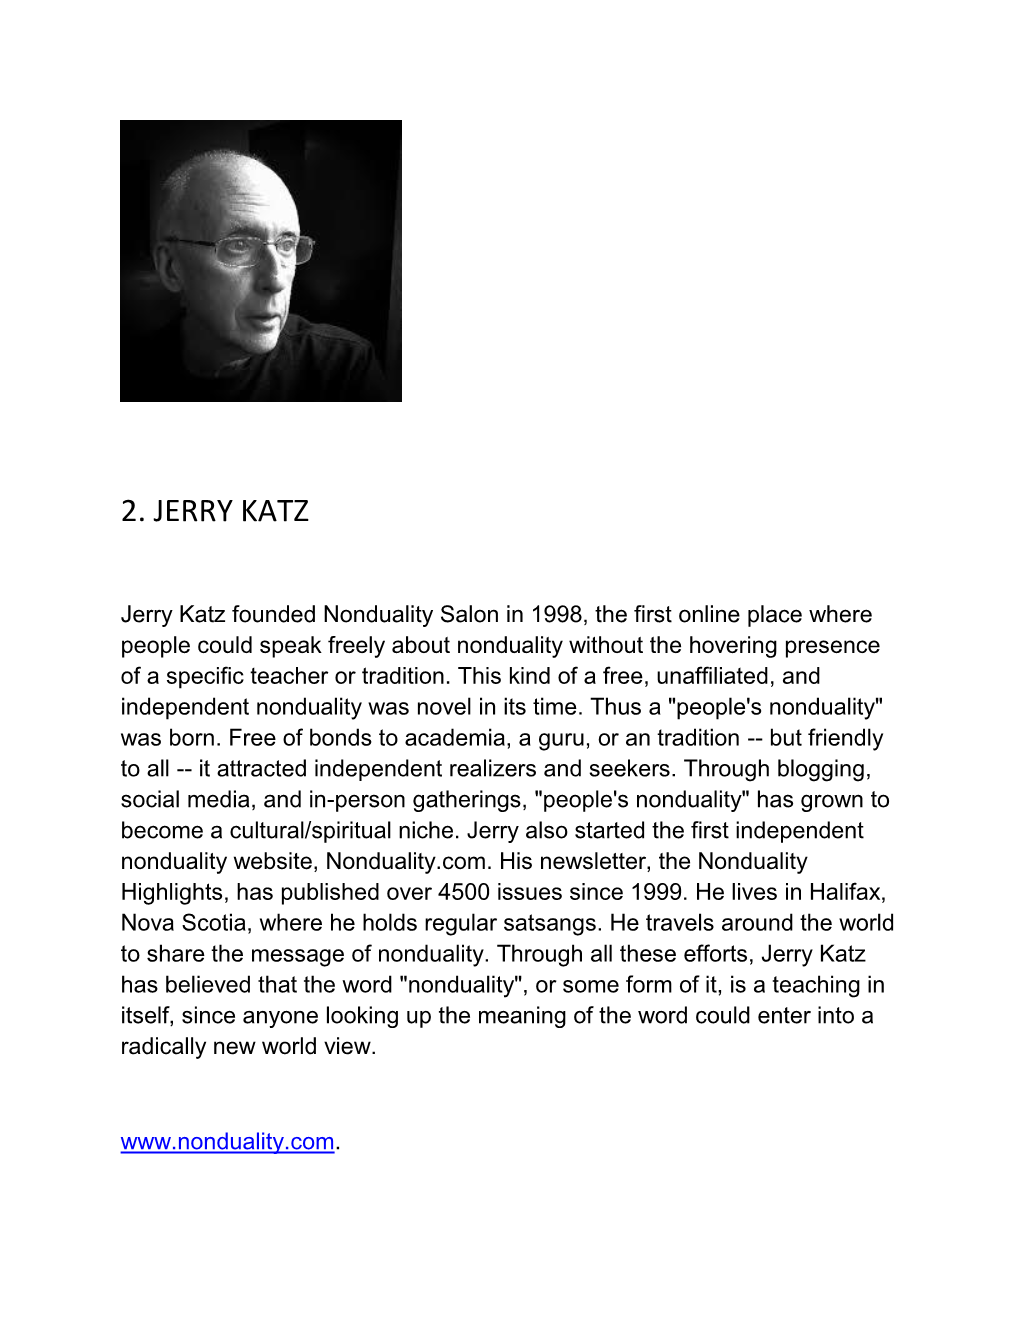 2. Jerry Katz